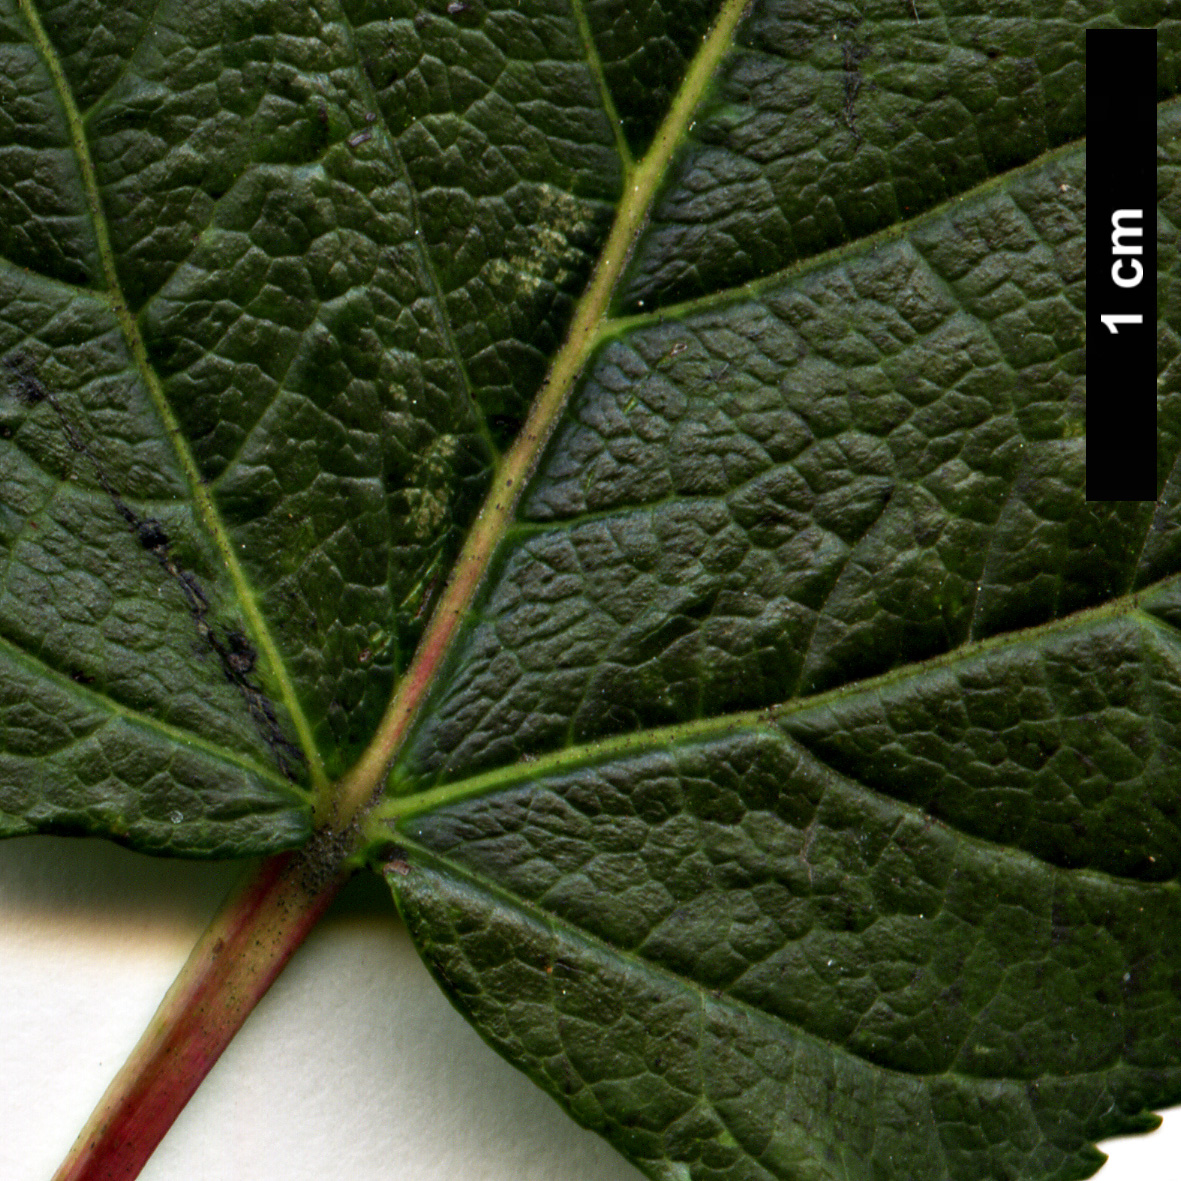 High resolution image: Family: Sapindaceae - Genus: Acer - Taxon: tataricum - SpeciesSub: subsp. tataricum